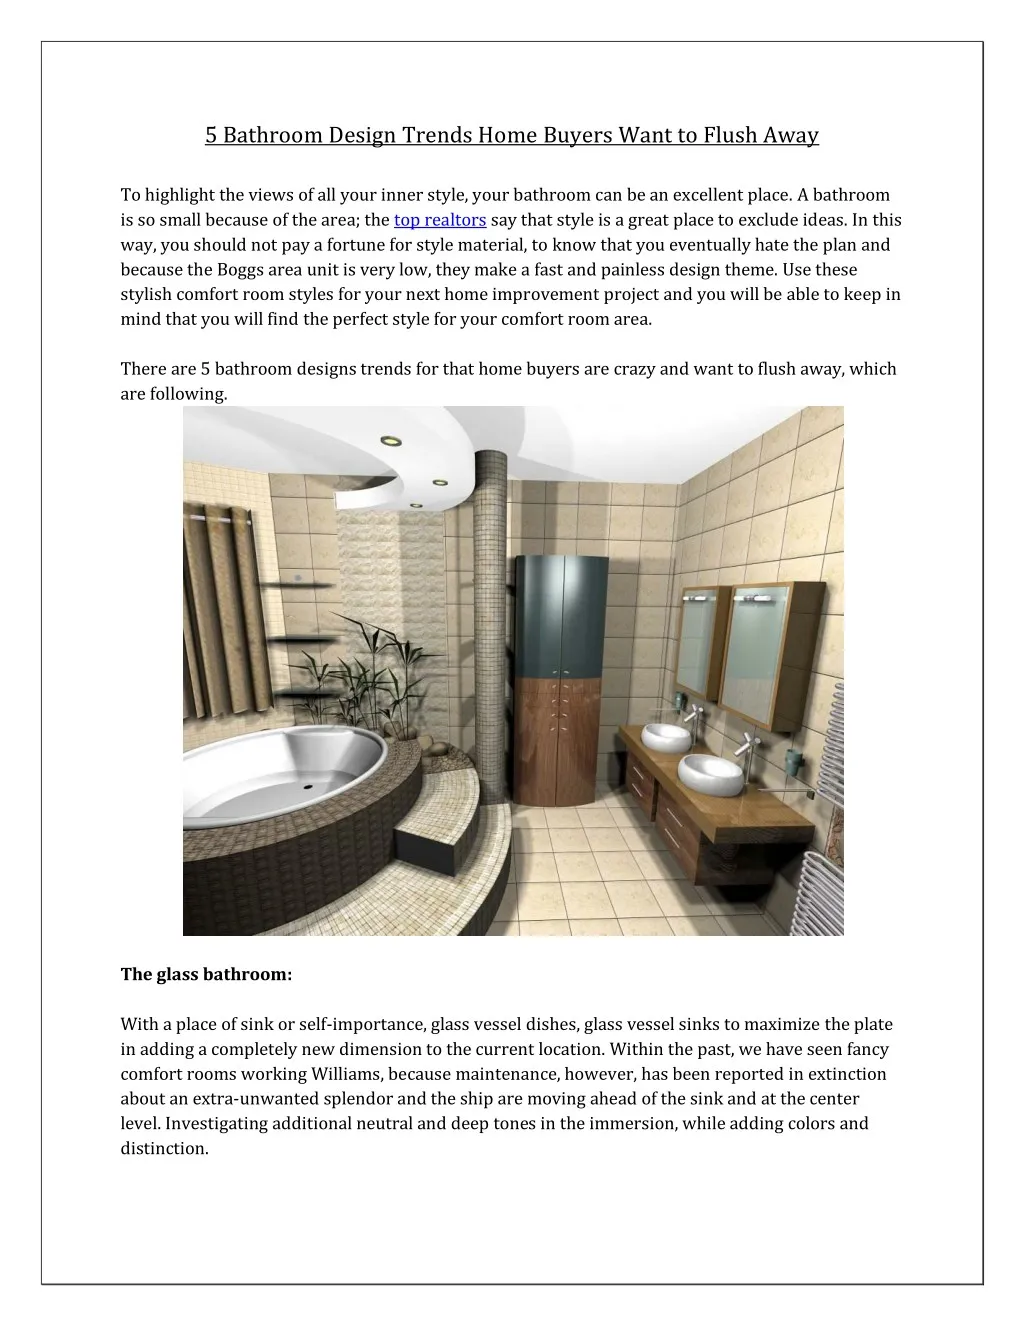 5 bathroom design trends home buyers want